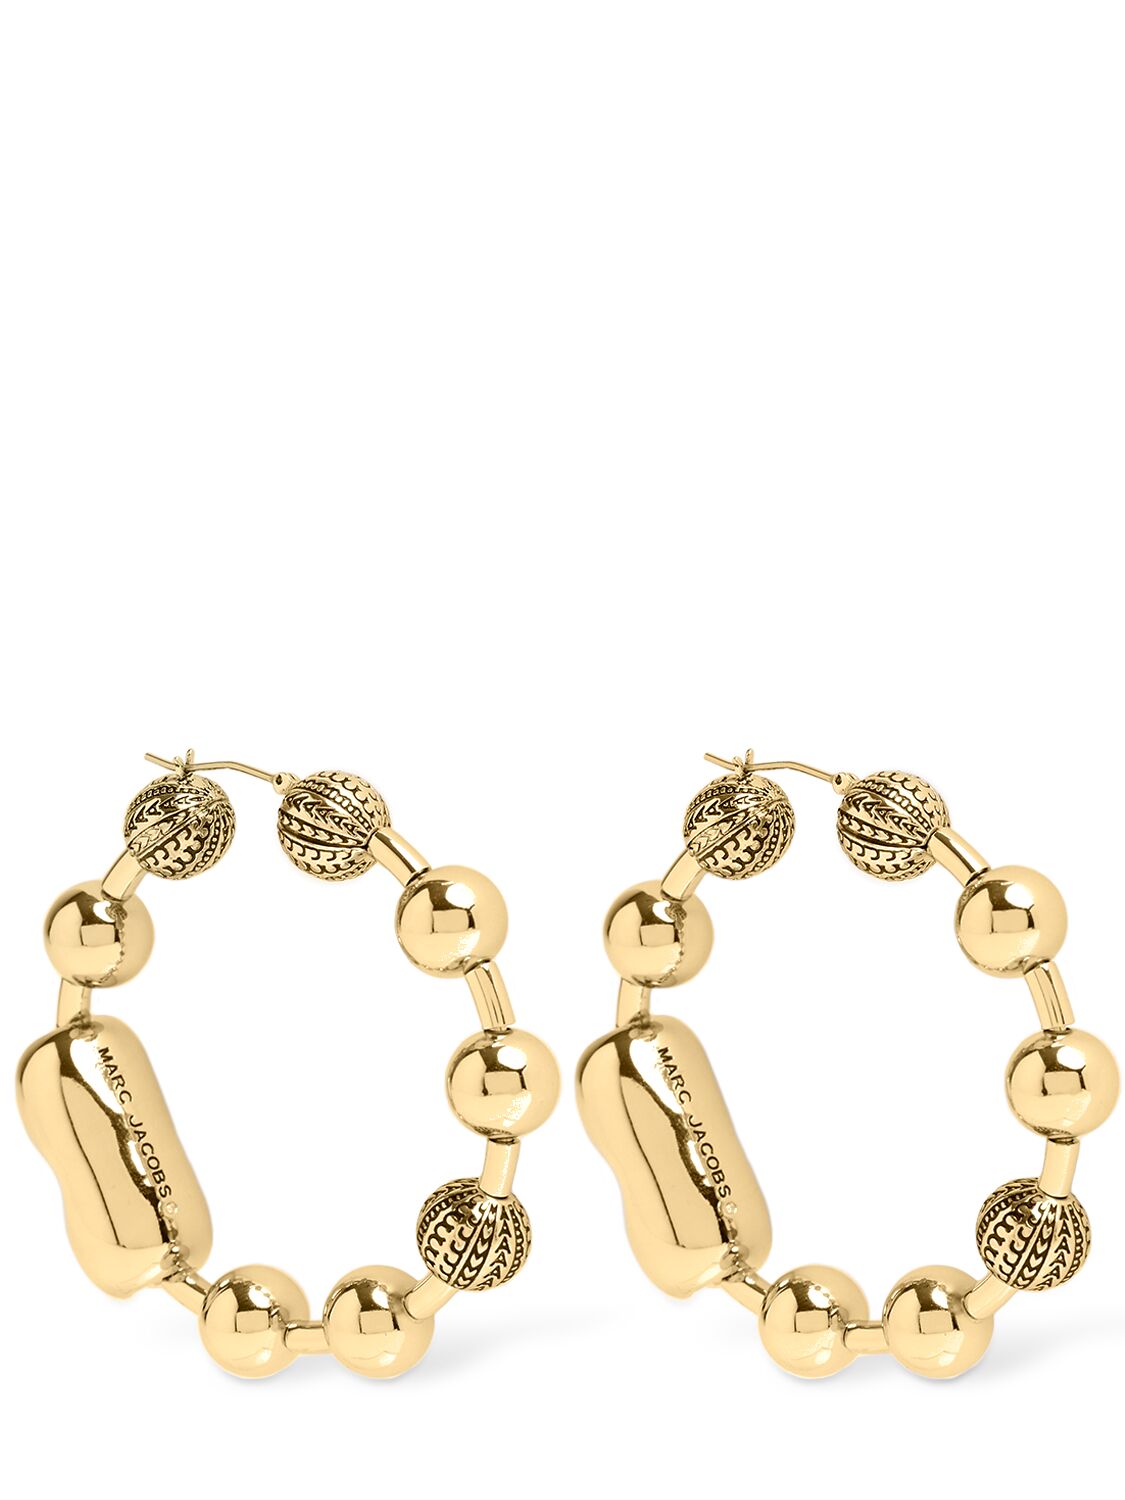 Image of Monogram Ball Chain Hoop Earrings